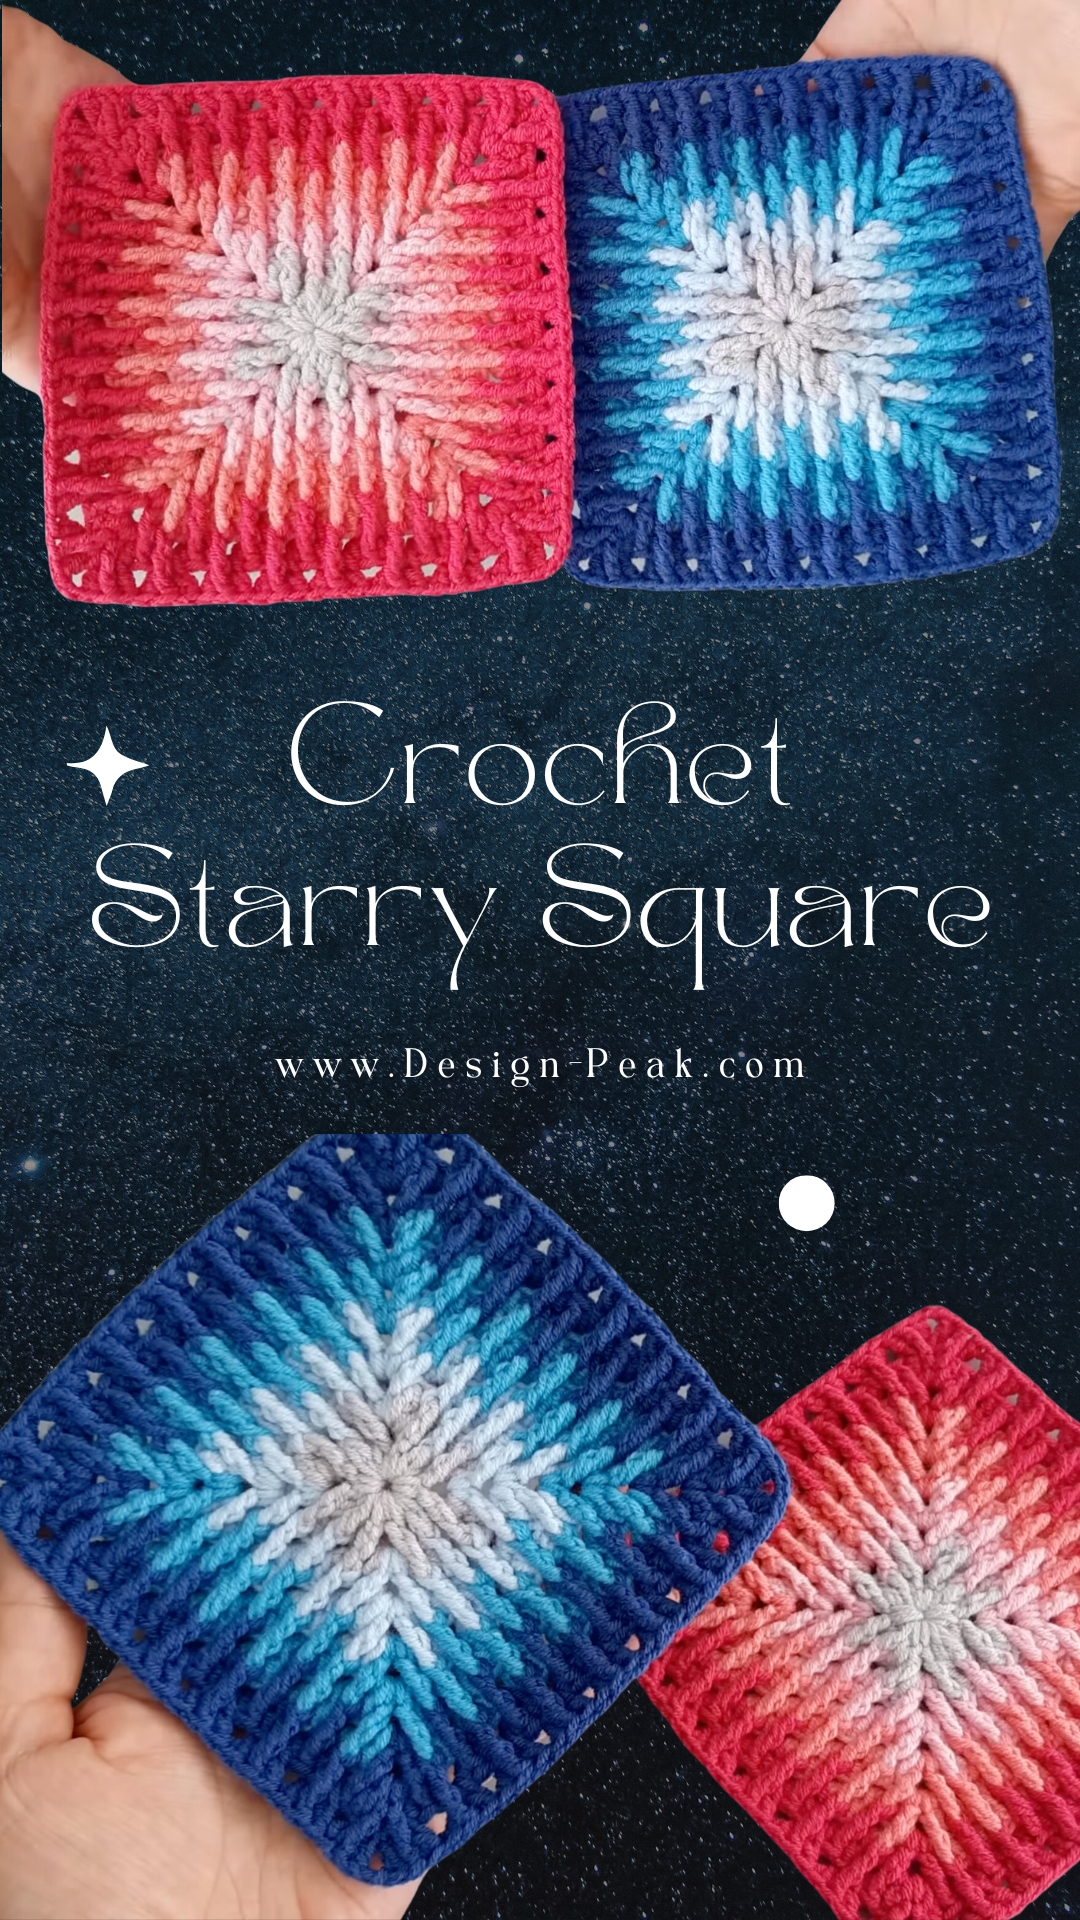 Crochet Starry Granny Square